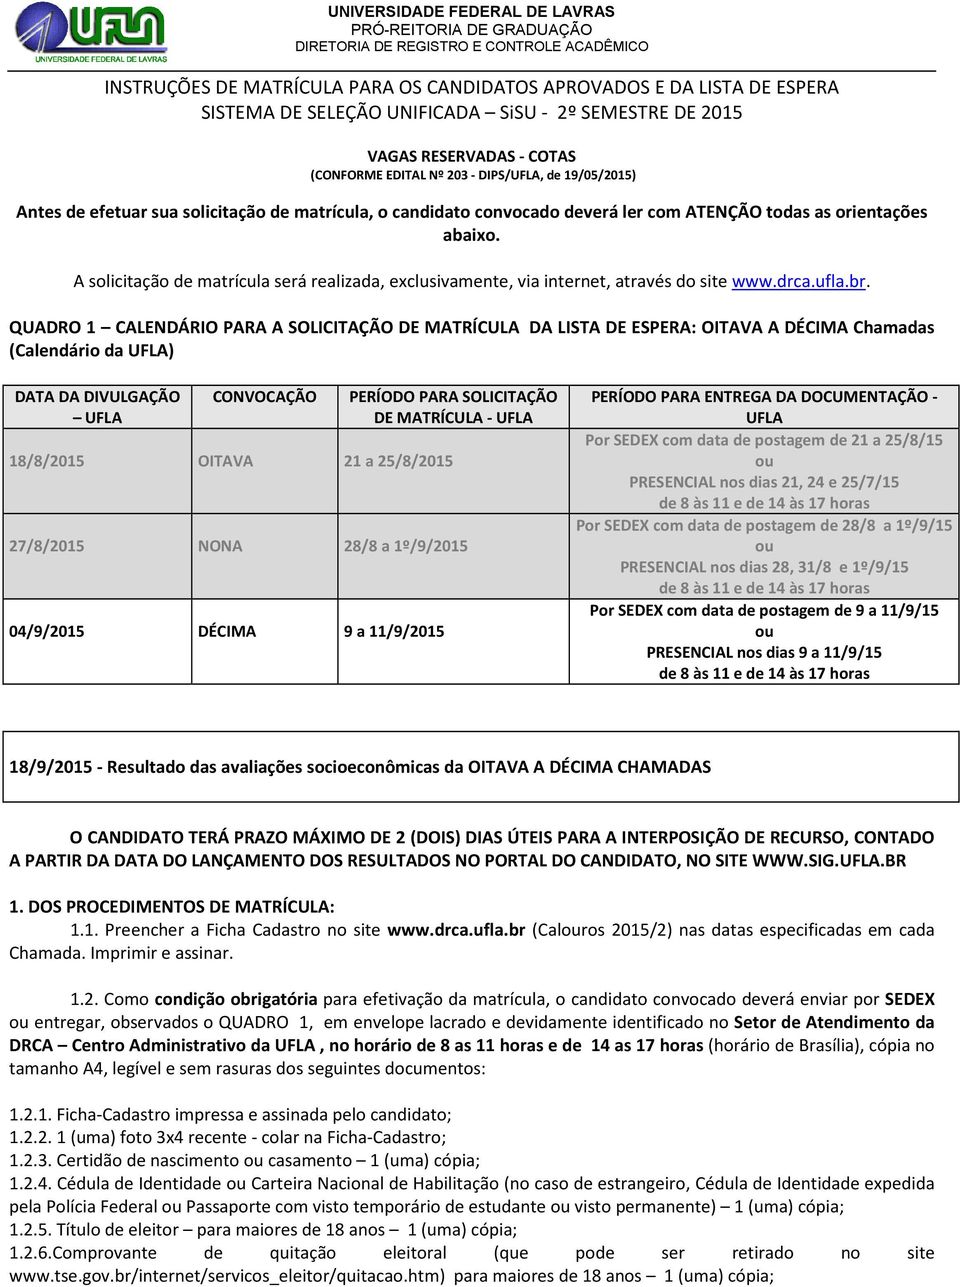 A solicitação de matrícula será realizada, exclusivamente, via internet, através do site www.drca.ufla.br.